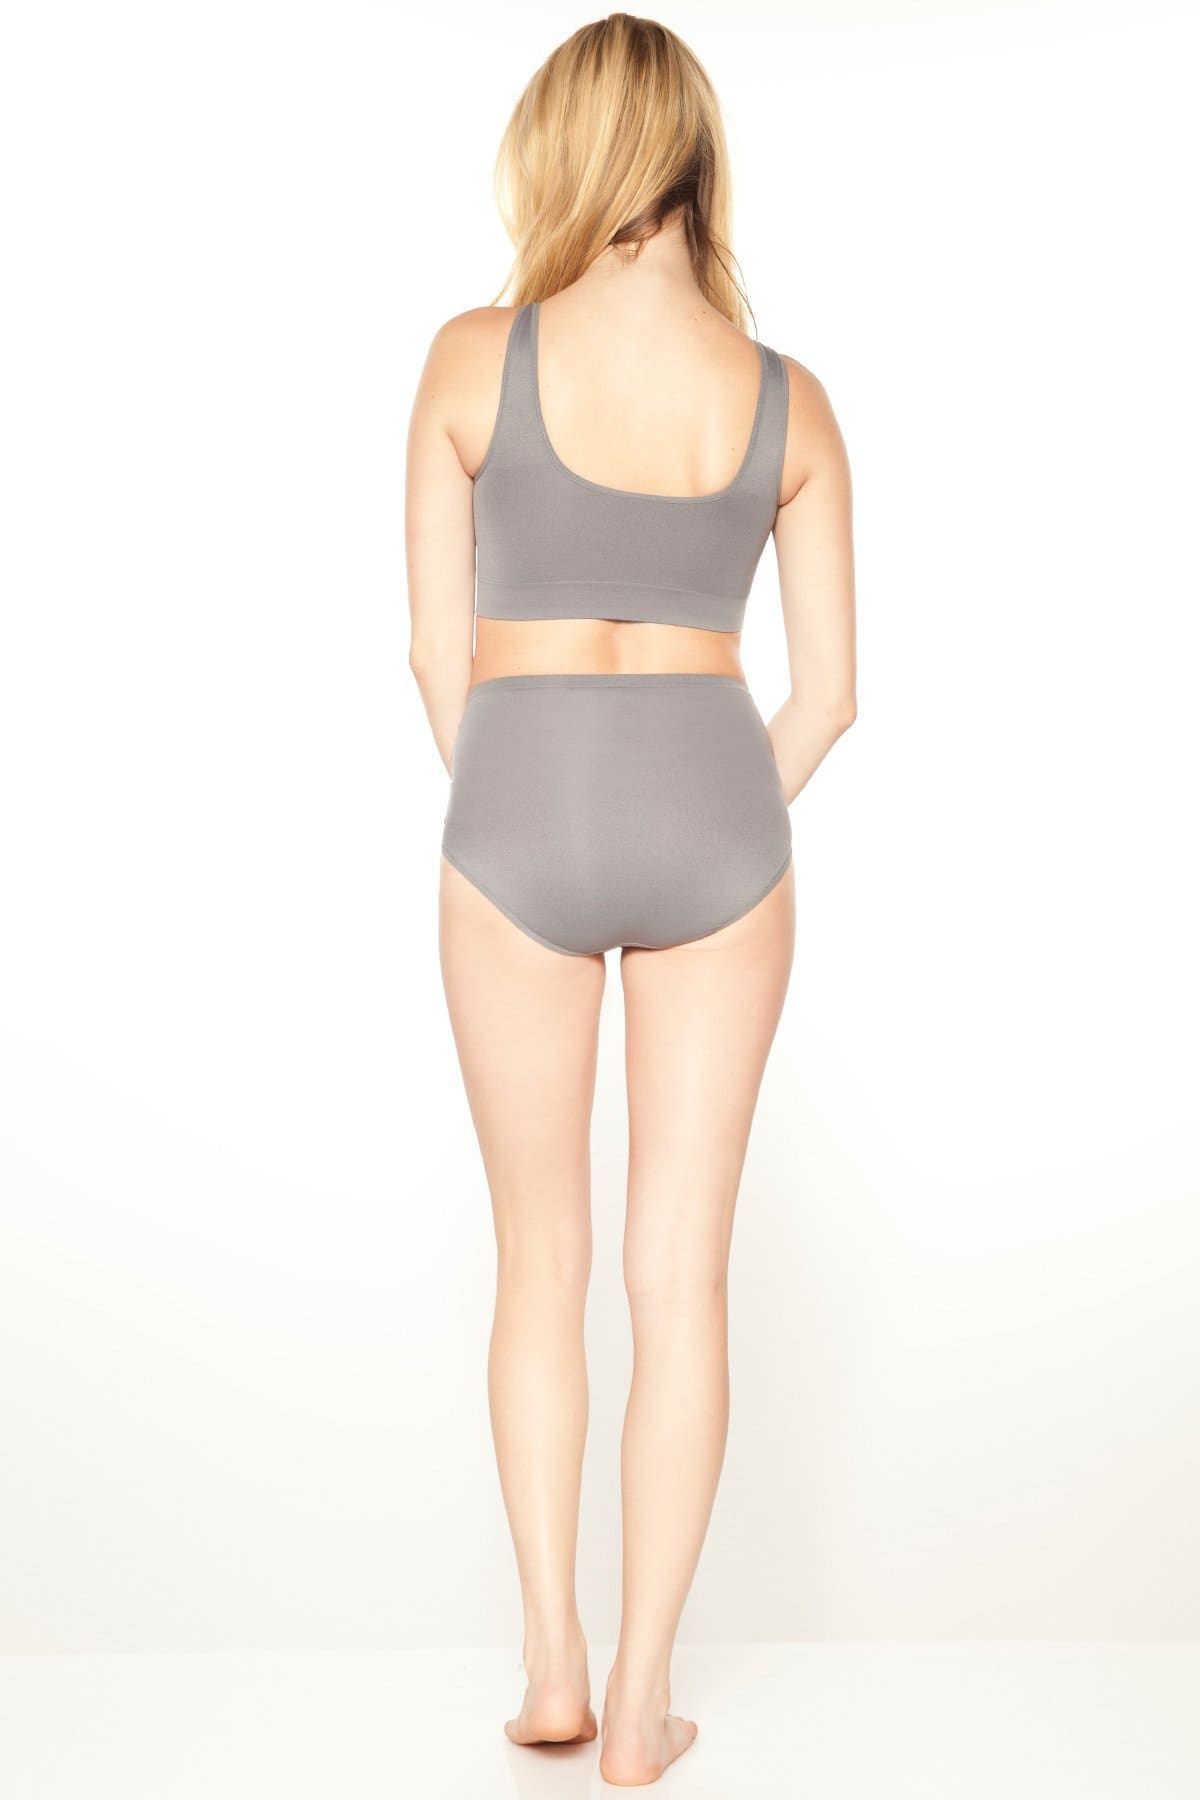 Rhonda Shear Lace Underwear briefs Tan size XL - beyond exchange